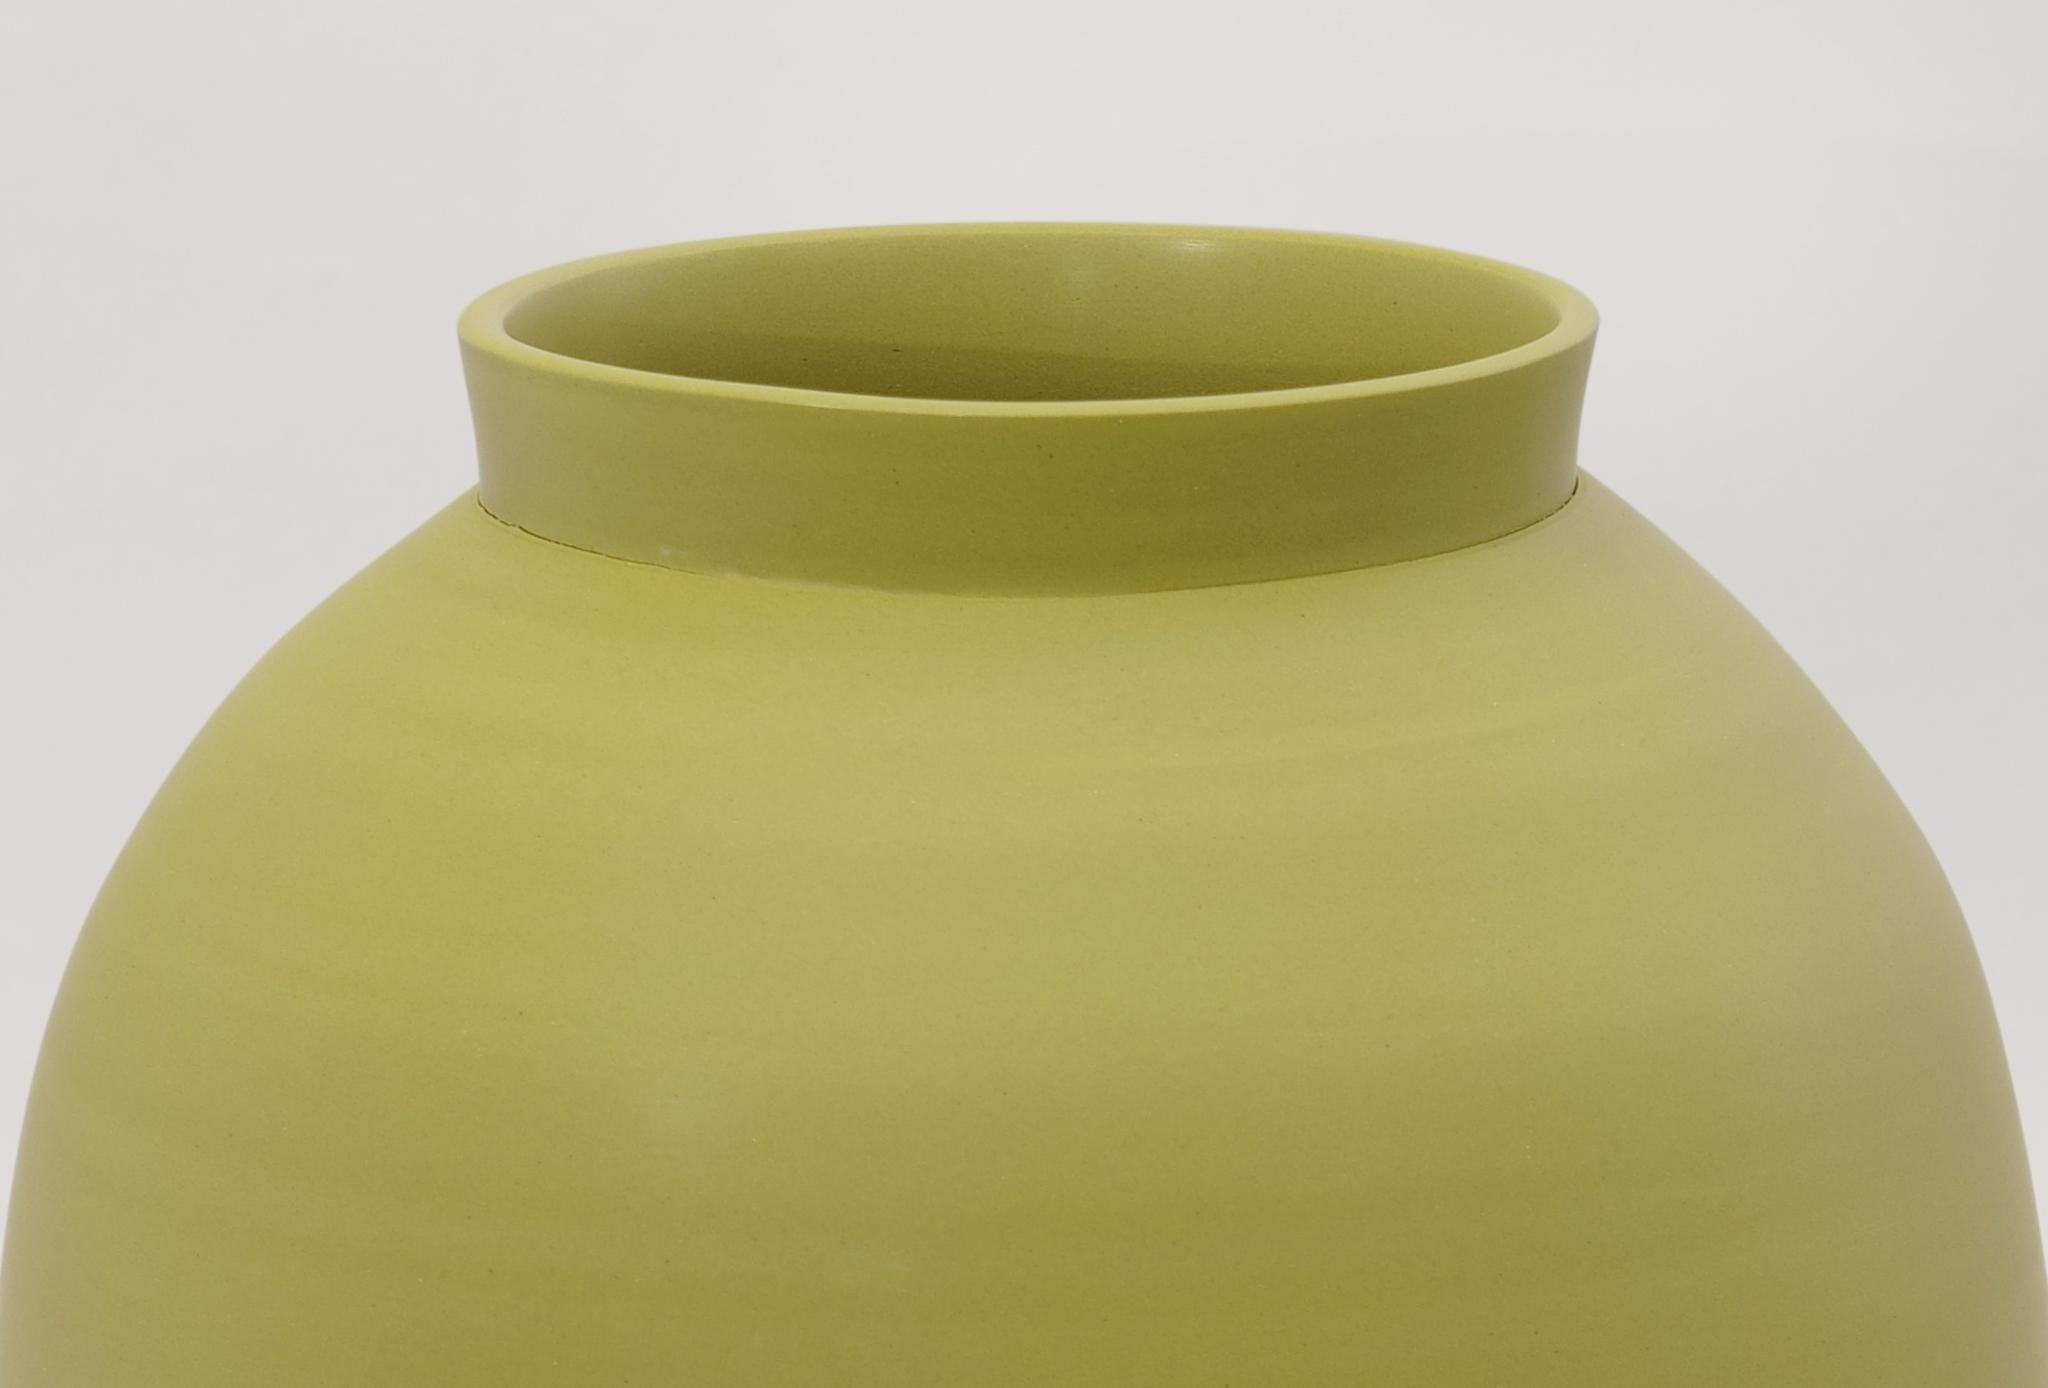 Other Half Half Vase by Jung Hong